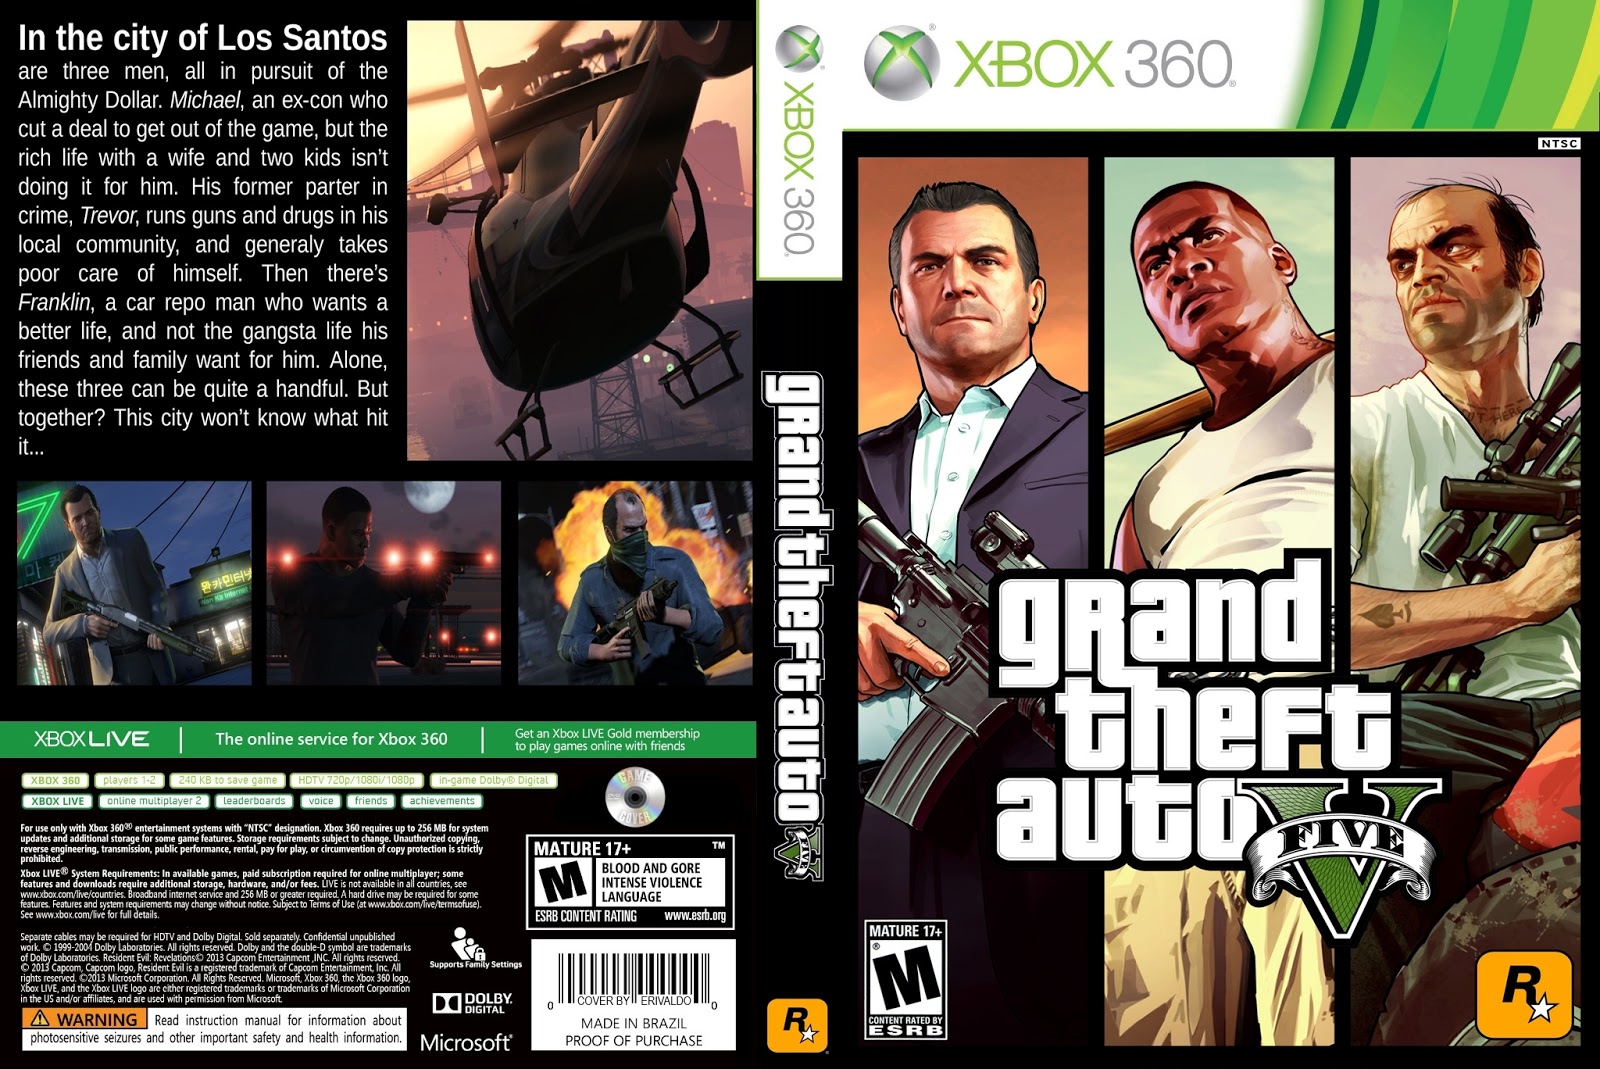 Ultra Capas Grand Theft Auto V Xbox 360